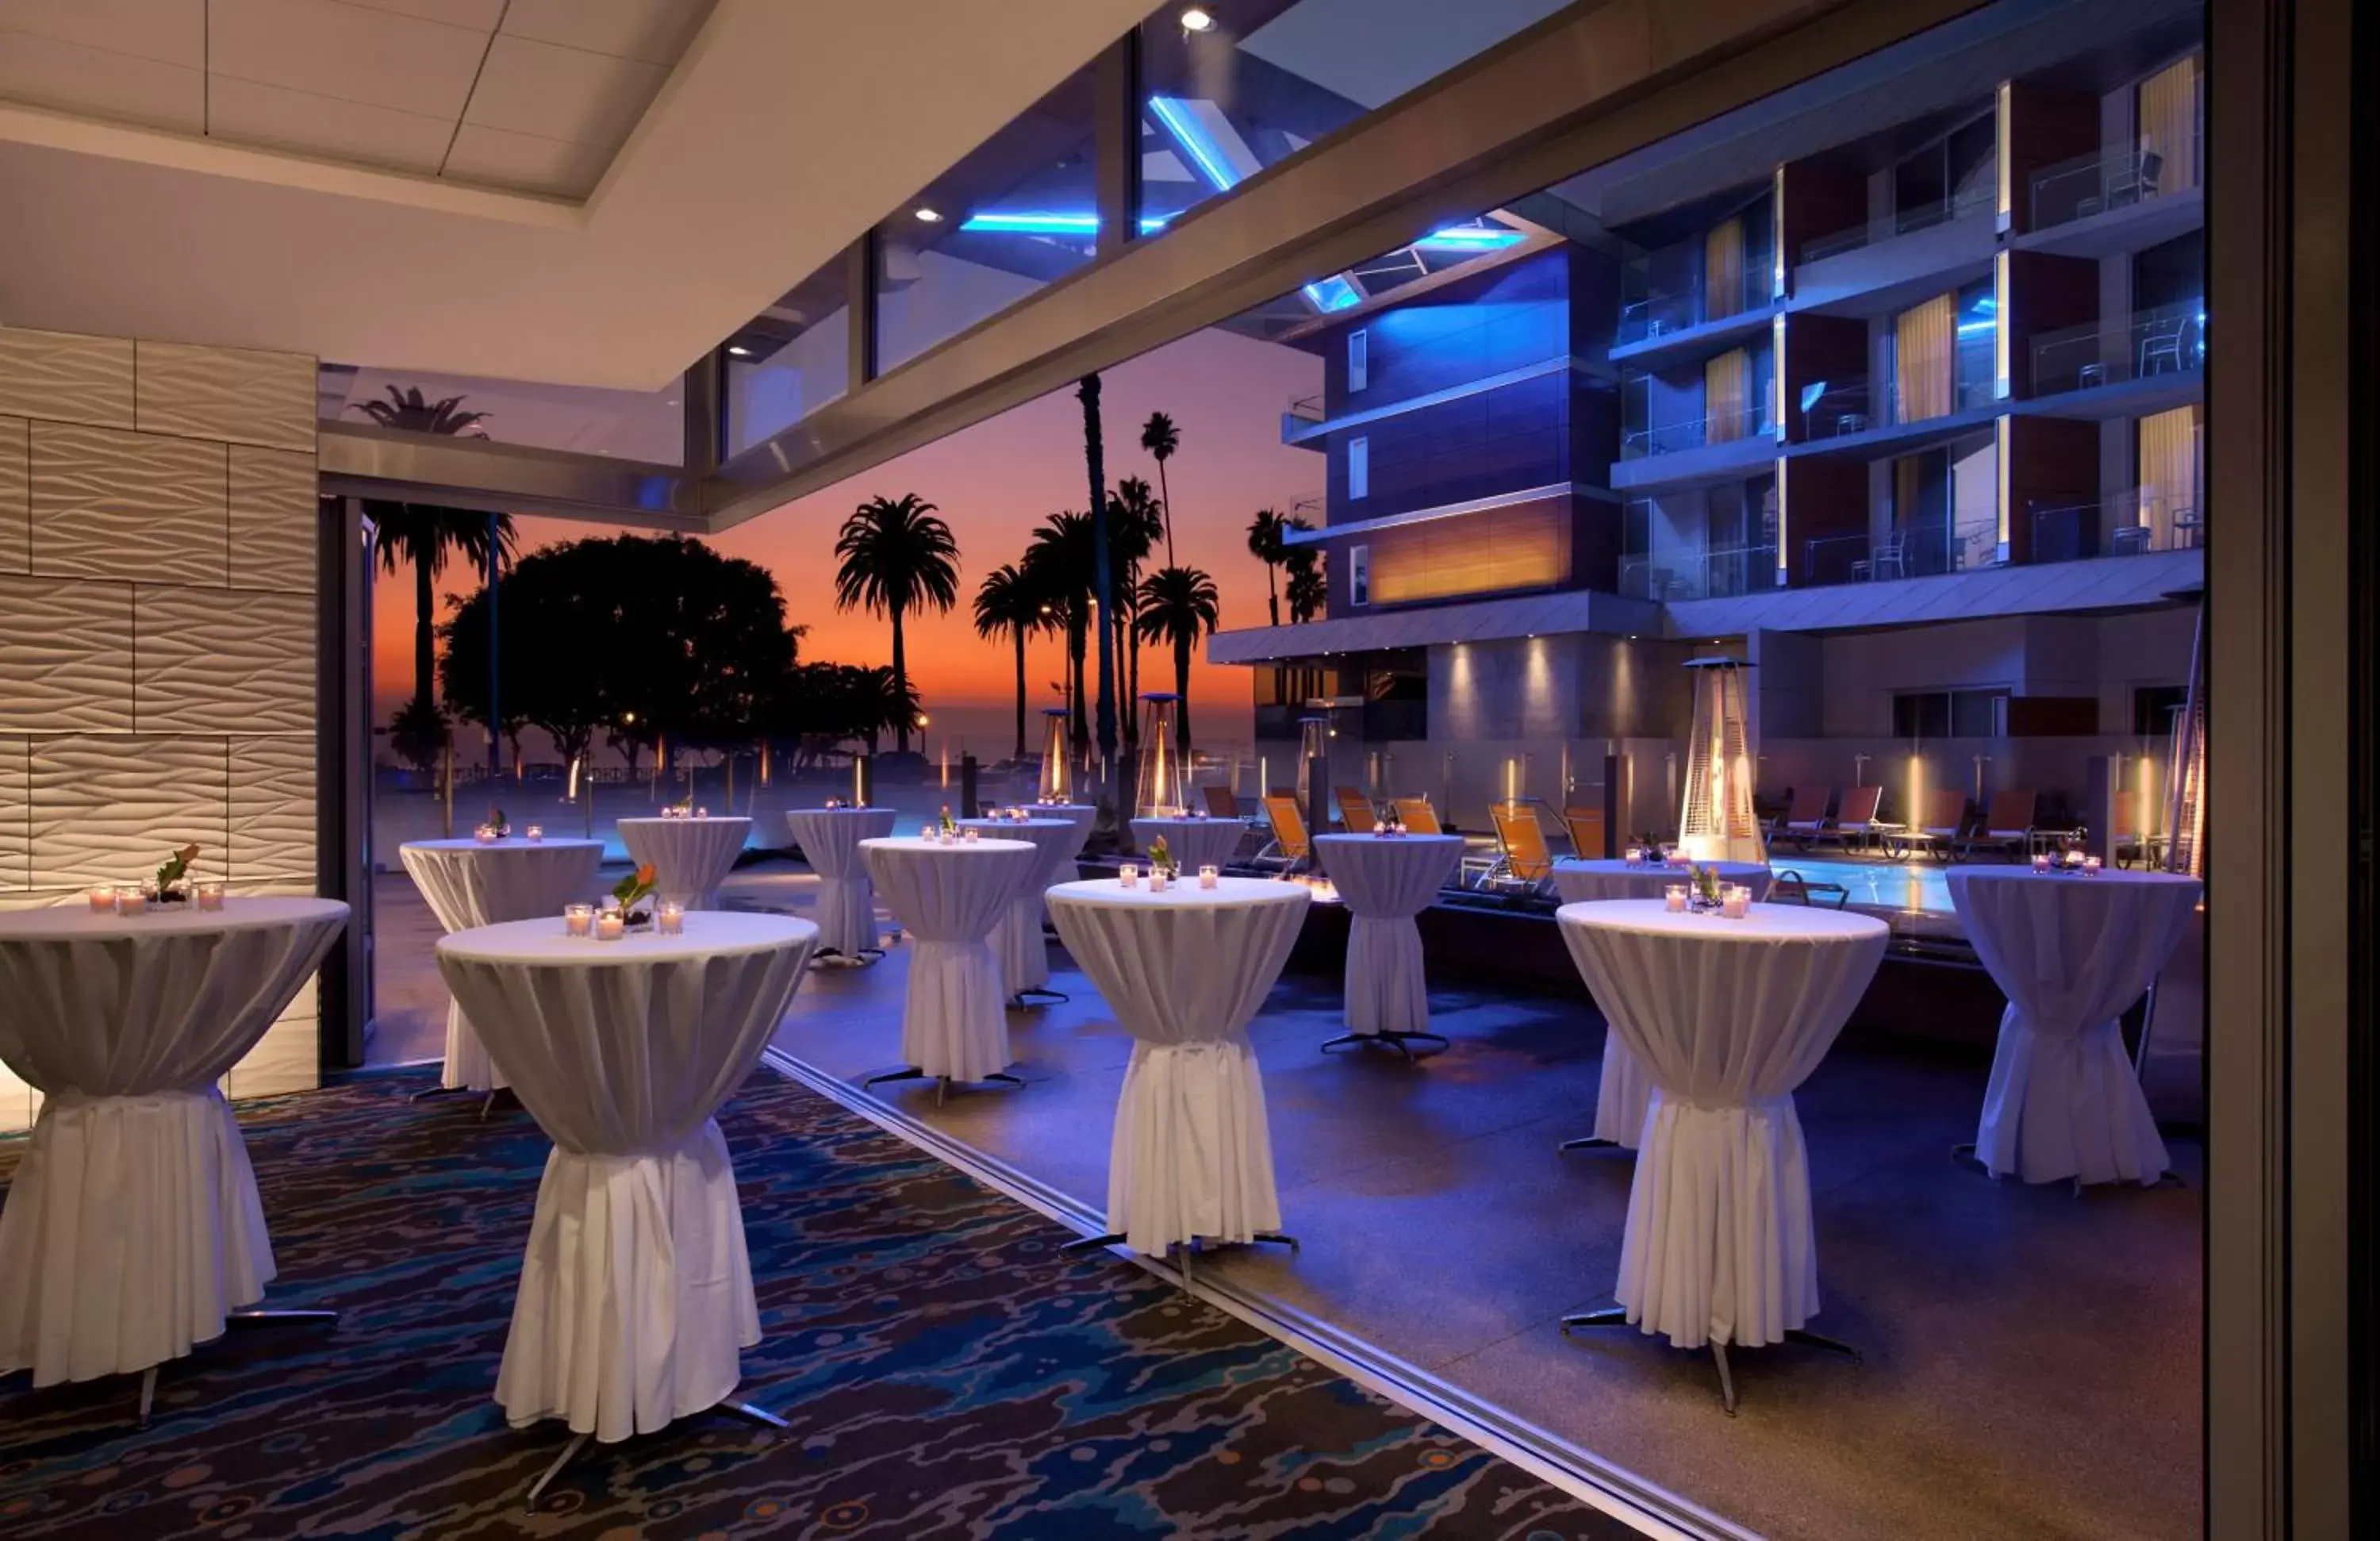 Banquet/Function facilities, Banquet Facilities in Shore Hotel